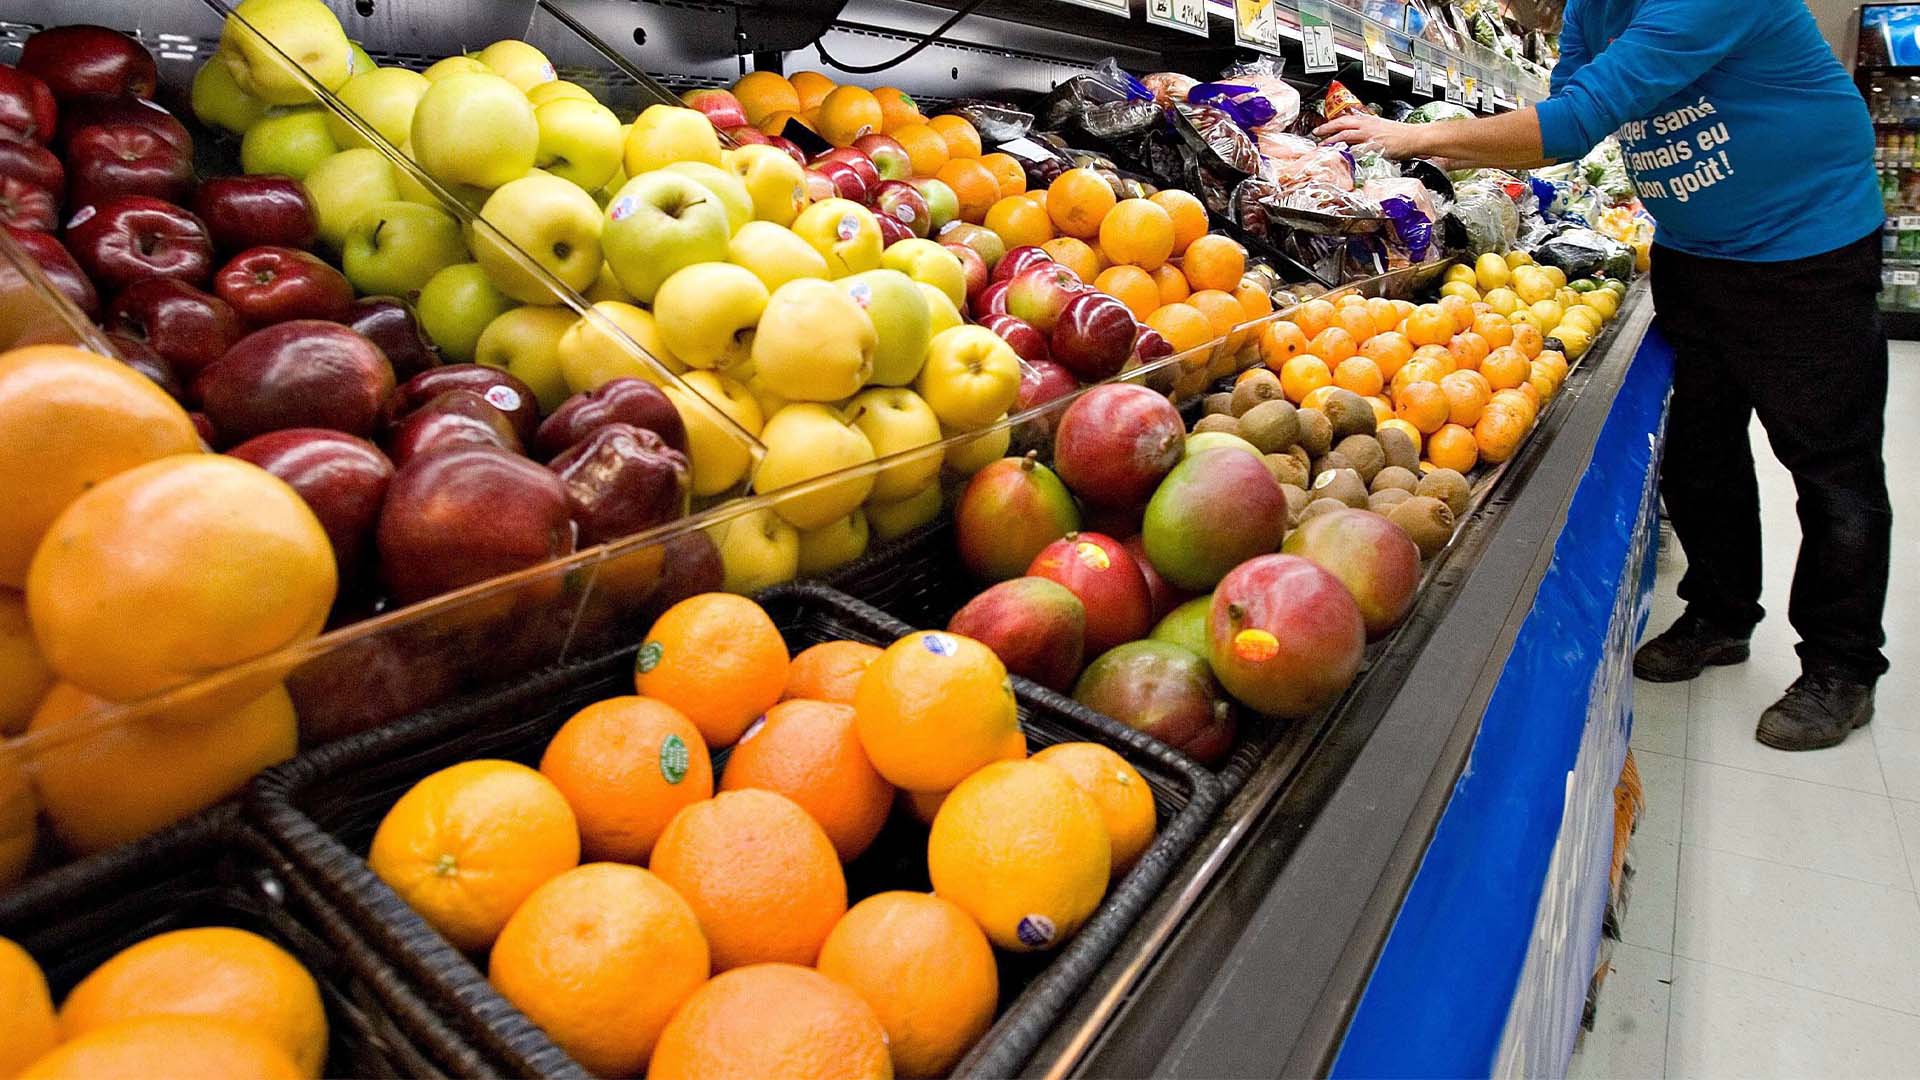 Par rapport à la même période l’année dernière, le coût des fruits frais a augmenté de 10 %, celui des légumes frais de 8,2 % et celui de la viande de 10,1 %. 